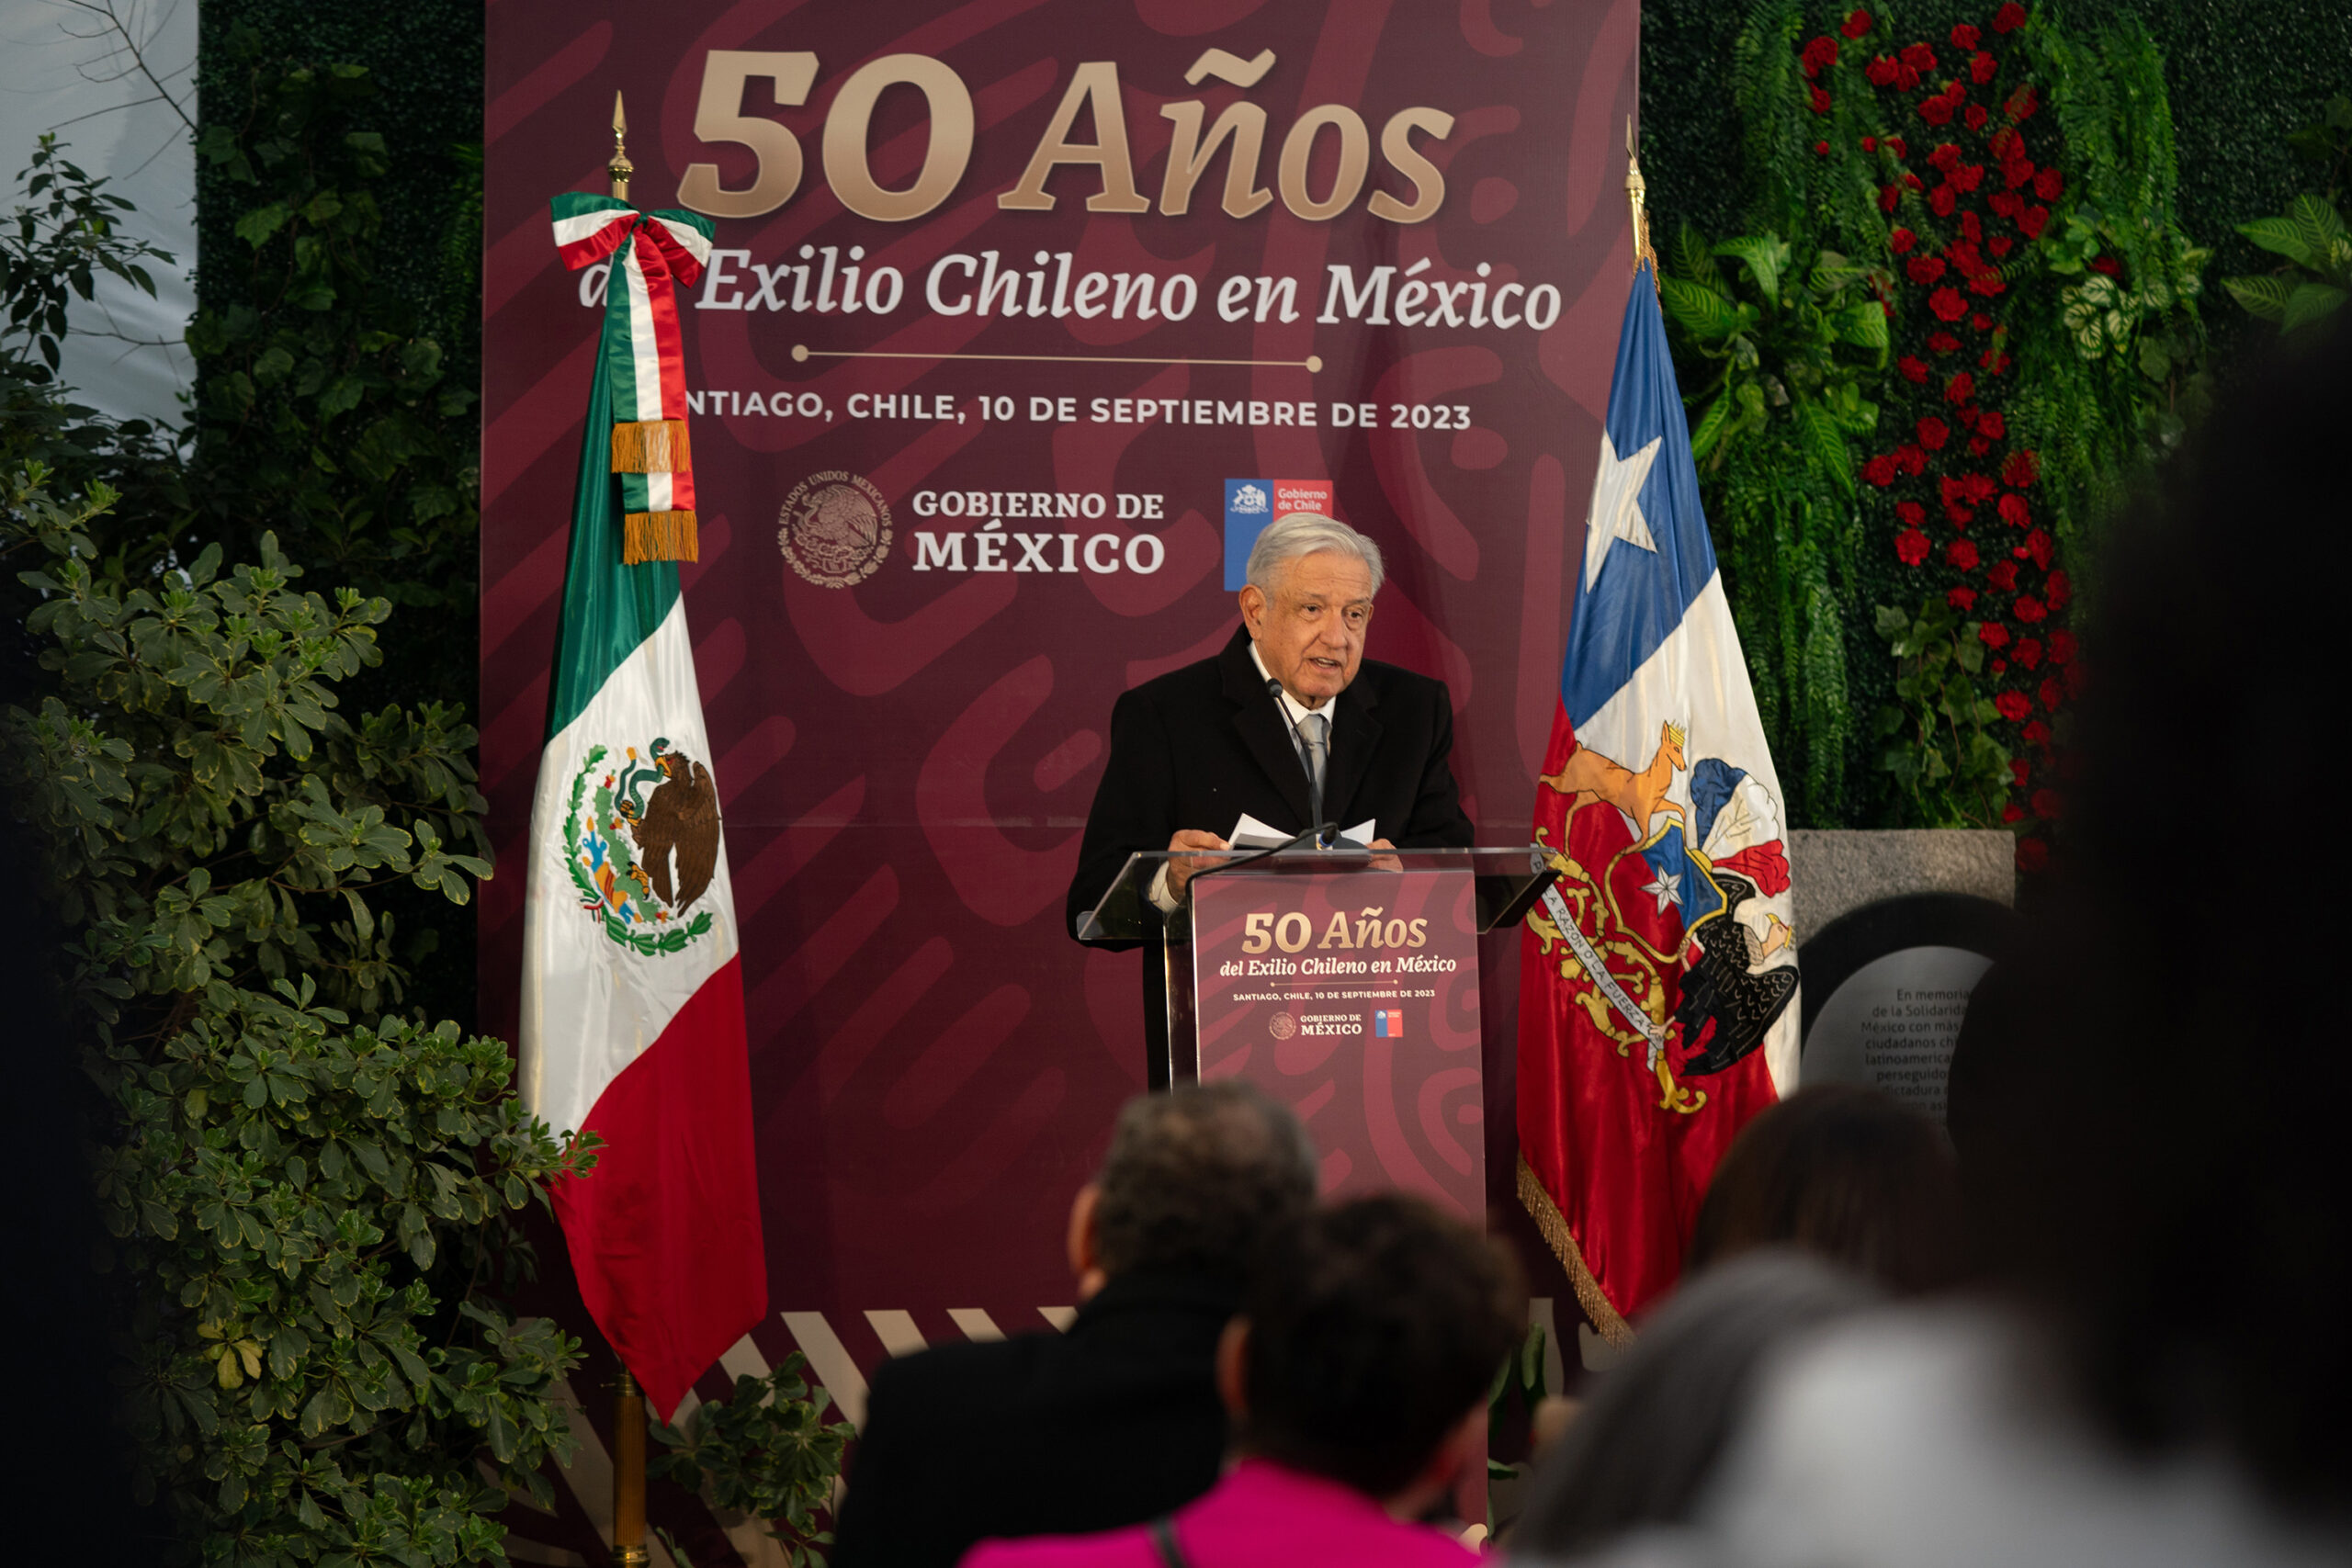 México y Chile están unidos por historia, fraternidad y anhelo de construir verdadera democracia: AMLO